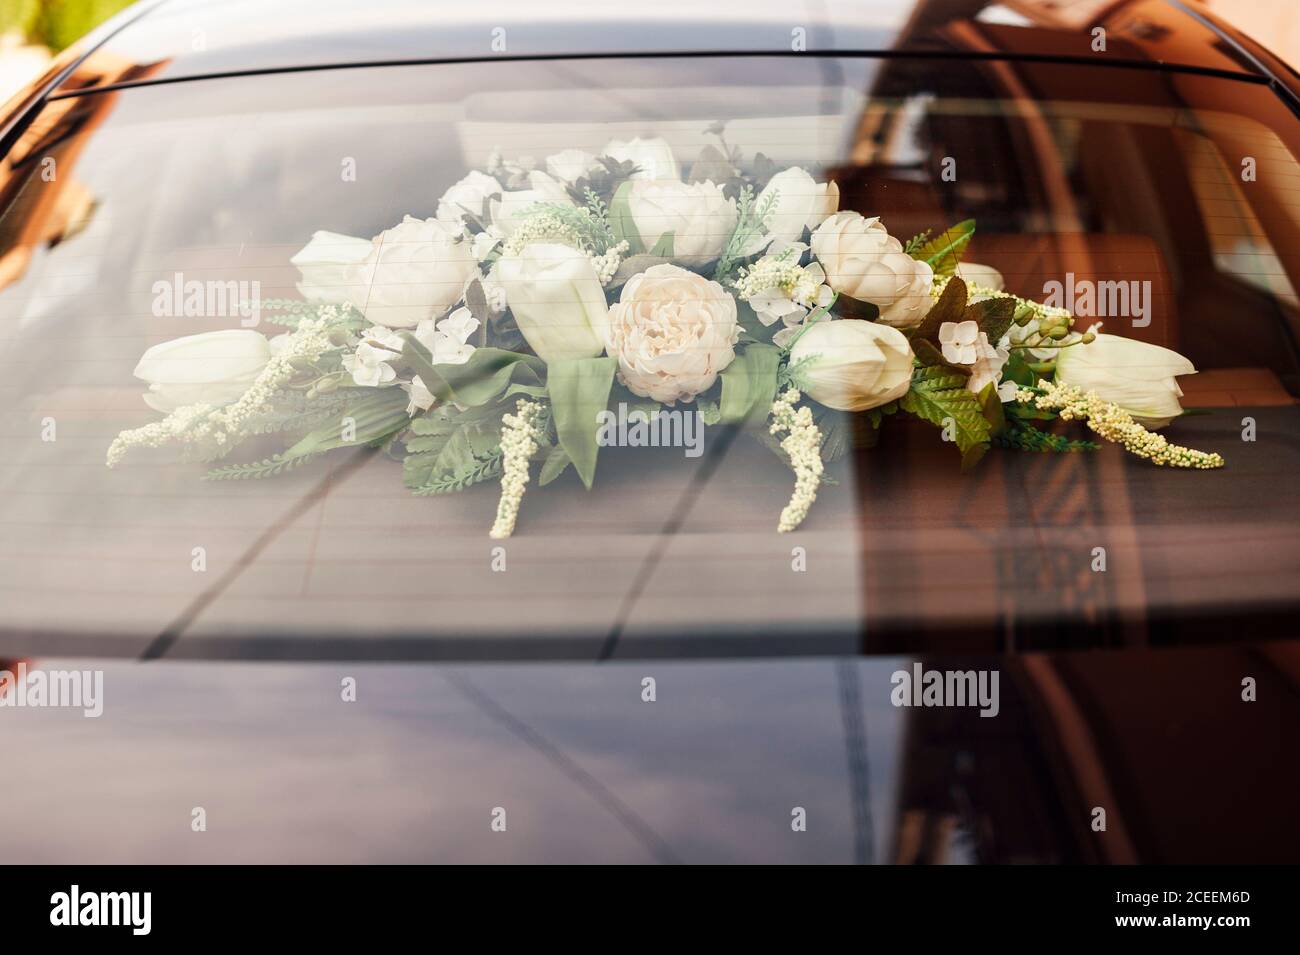 Weiße Blumen Dekoration für die Hochzeit im schwarzen Auto Stockfotografie  - Alamy